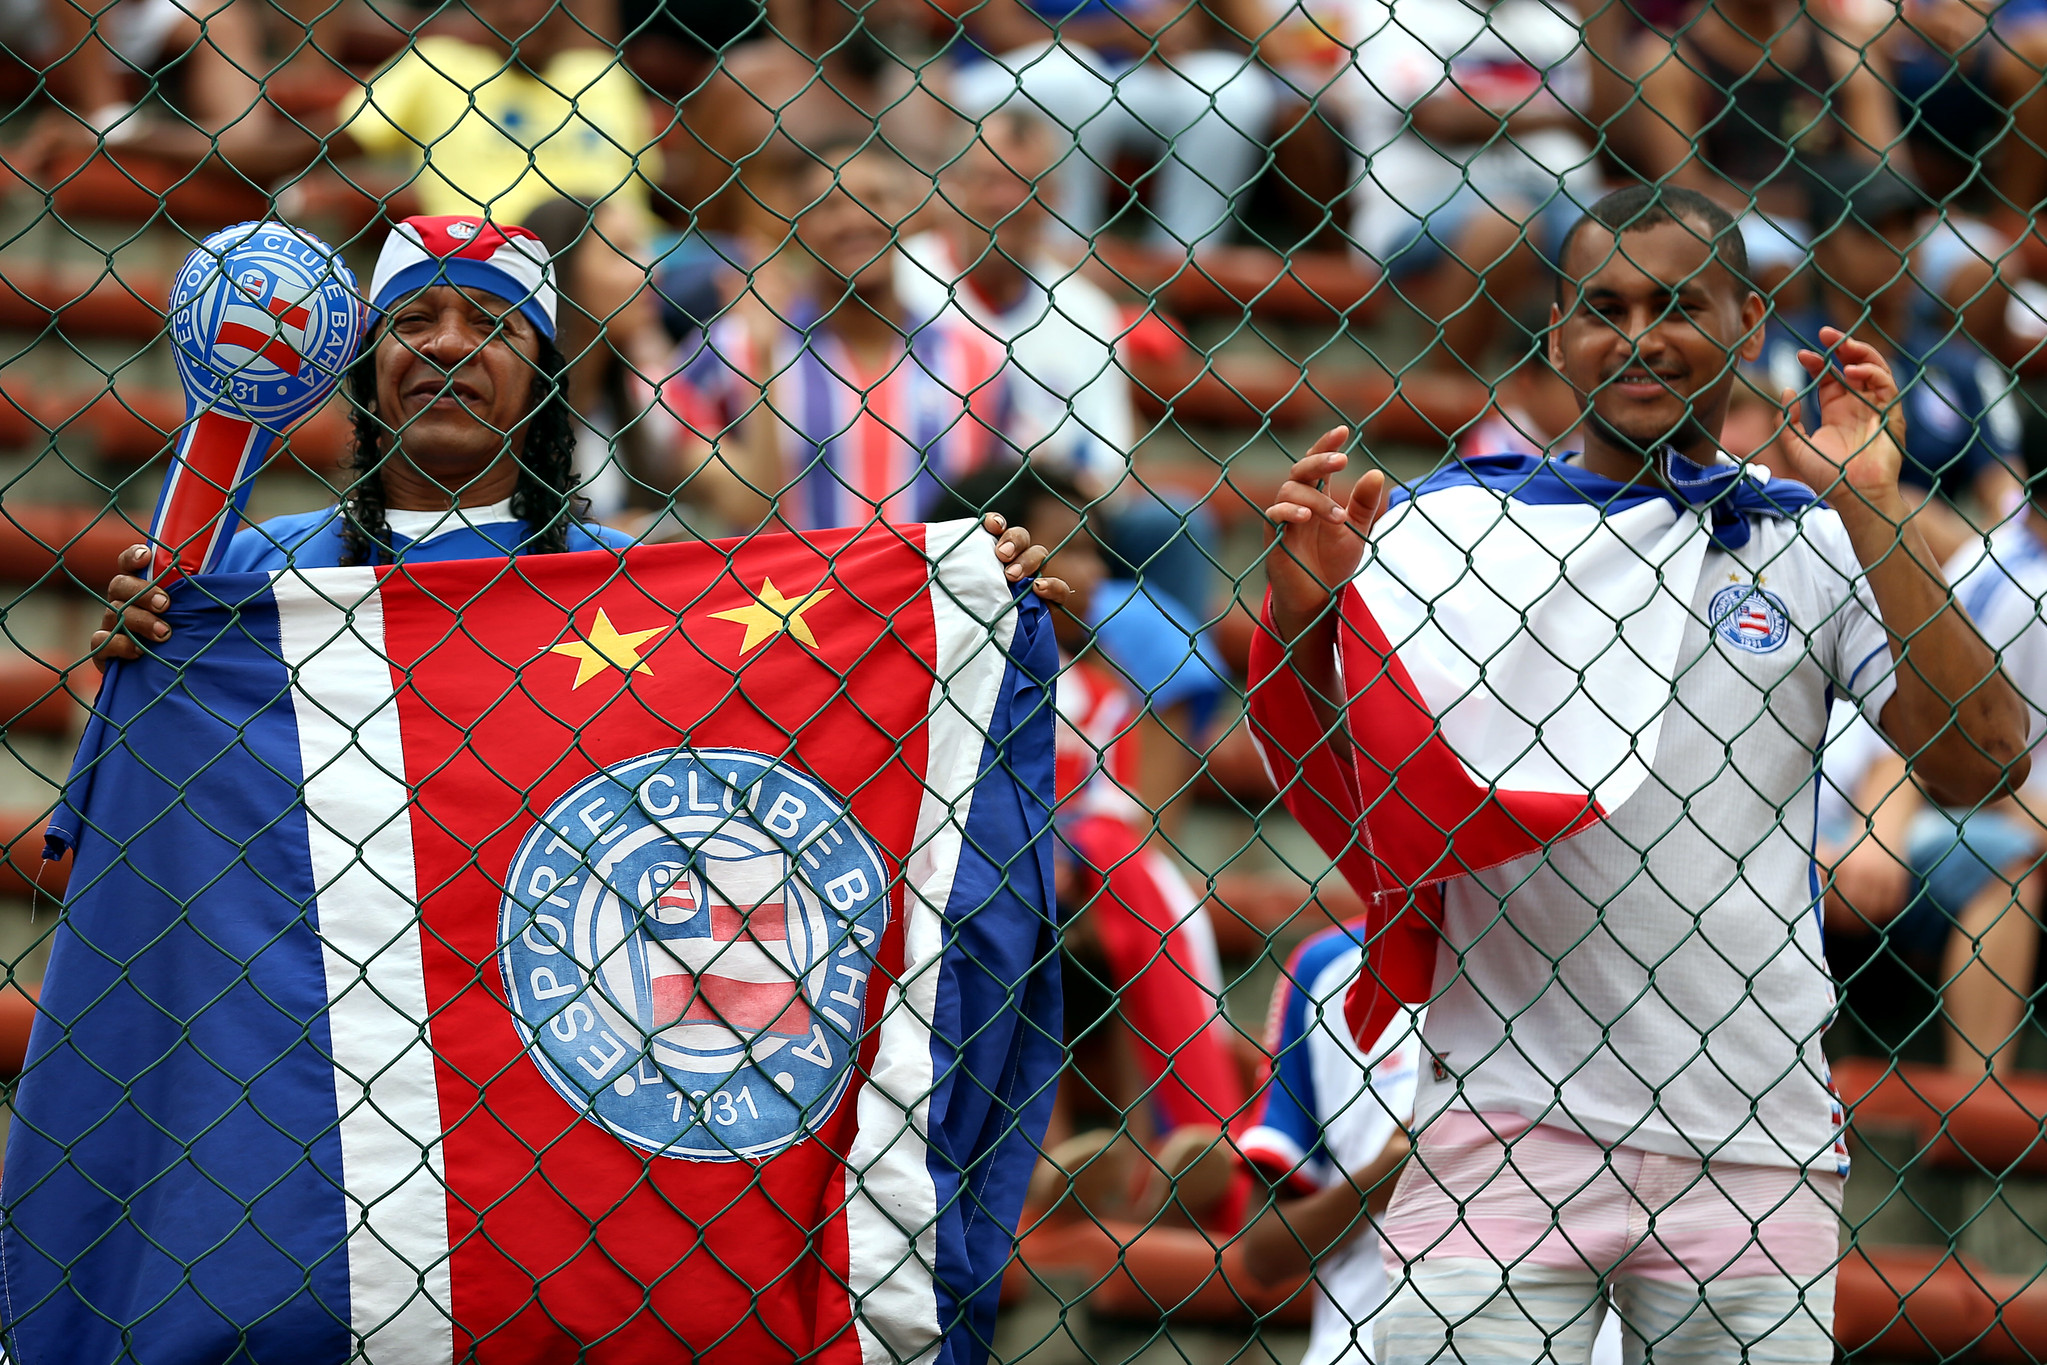 Torcedores do Bahia nos estádios (Foto: Felipe Oliveira / EC Bahia)